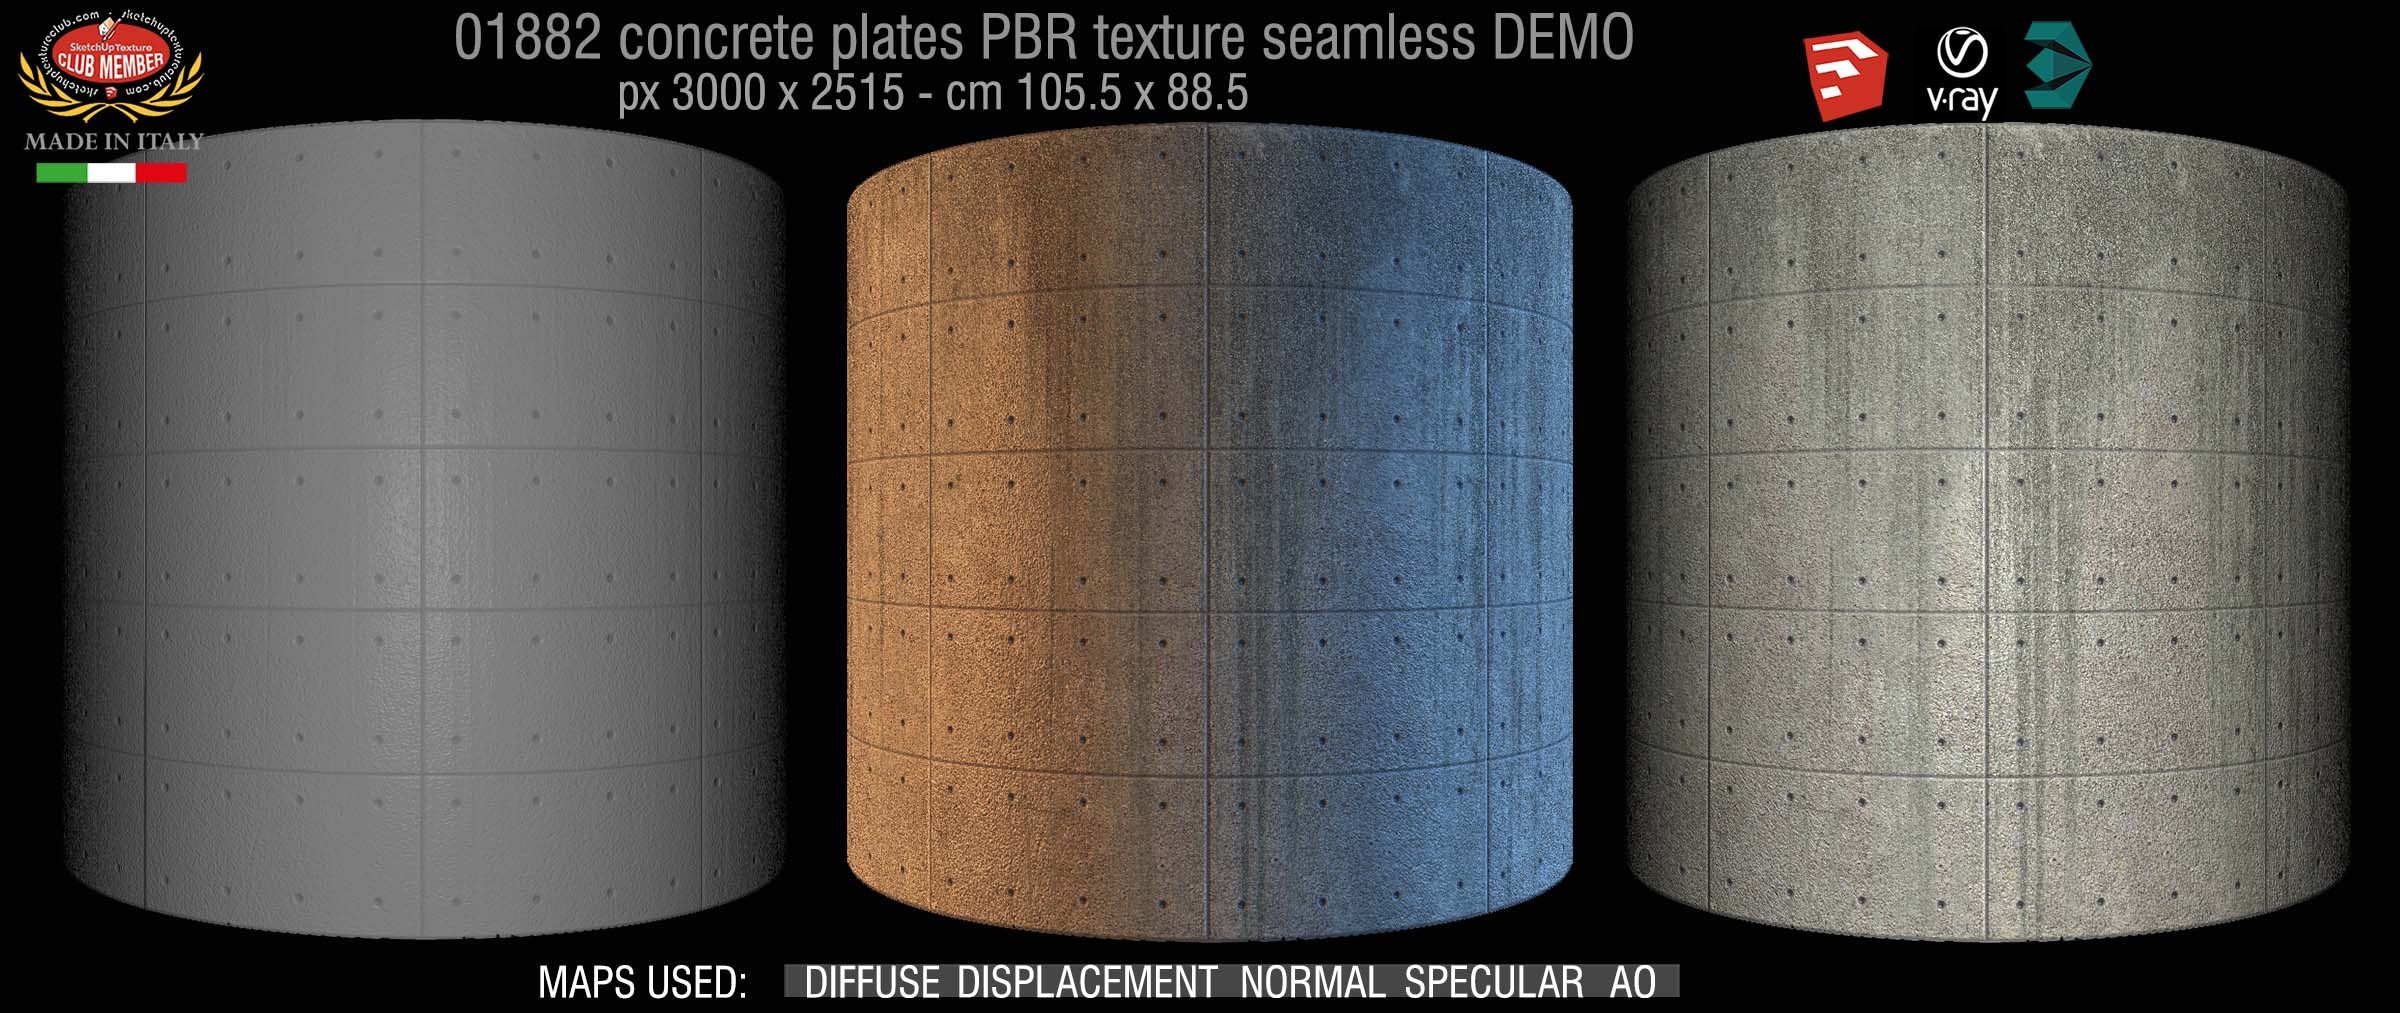 01882 Tadao Ando concrete plates PBR texture seamless DEMO